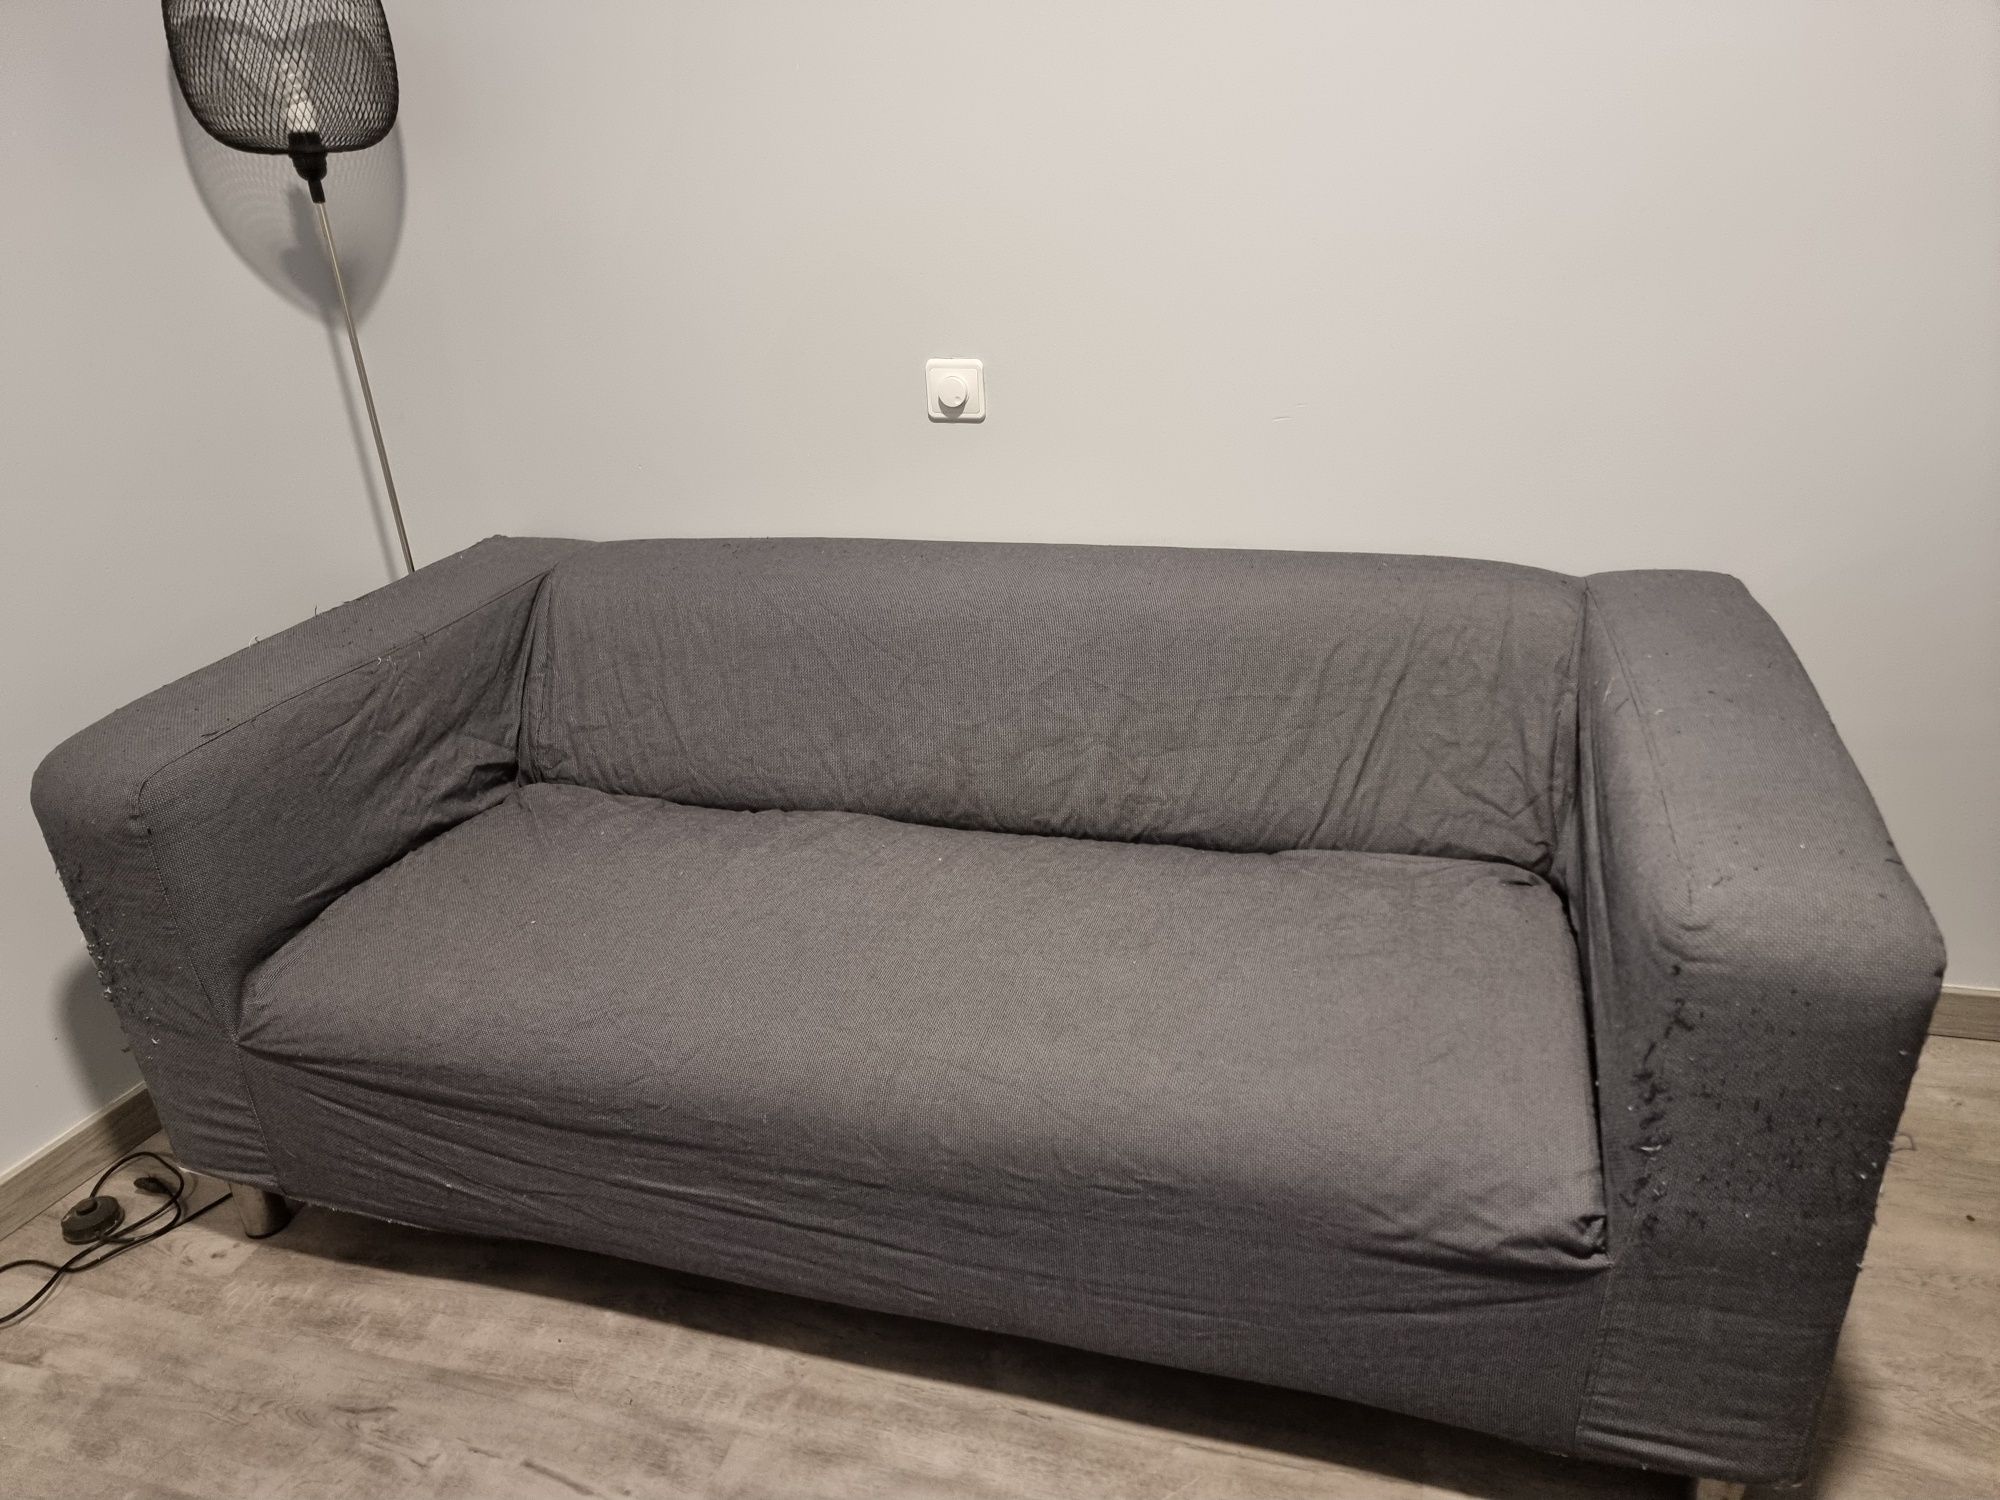 Sofa ikea usado em bom estado